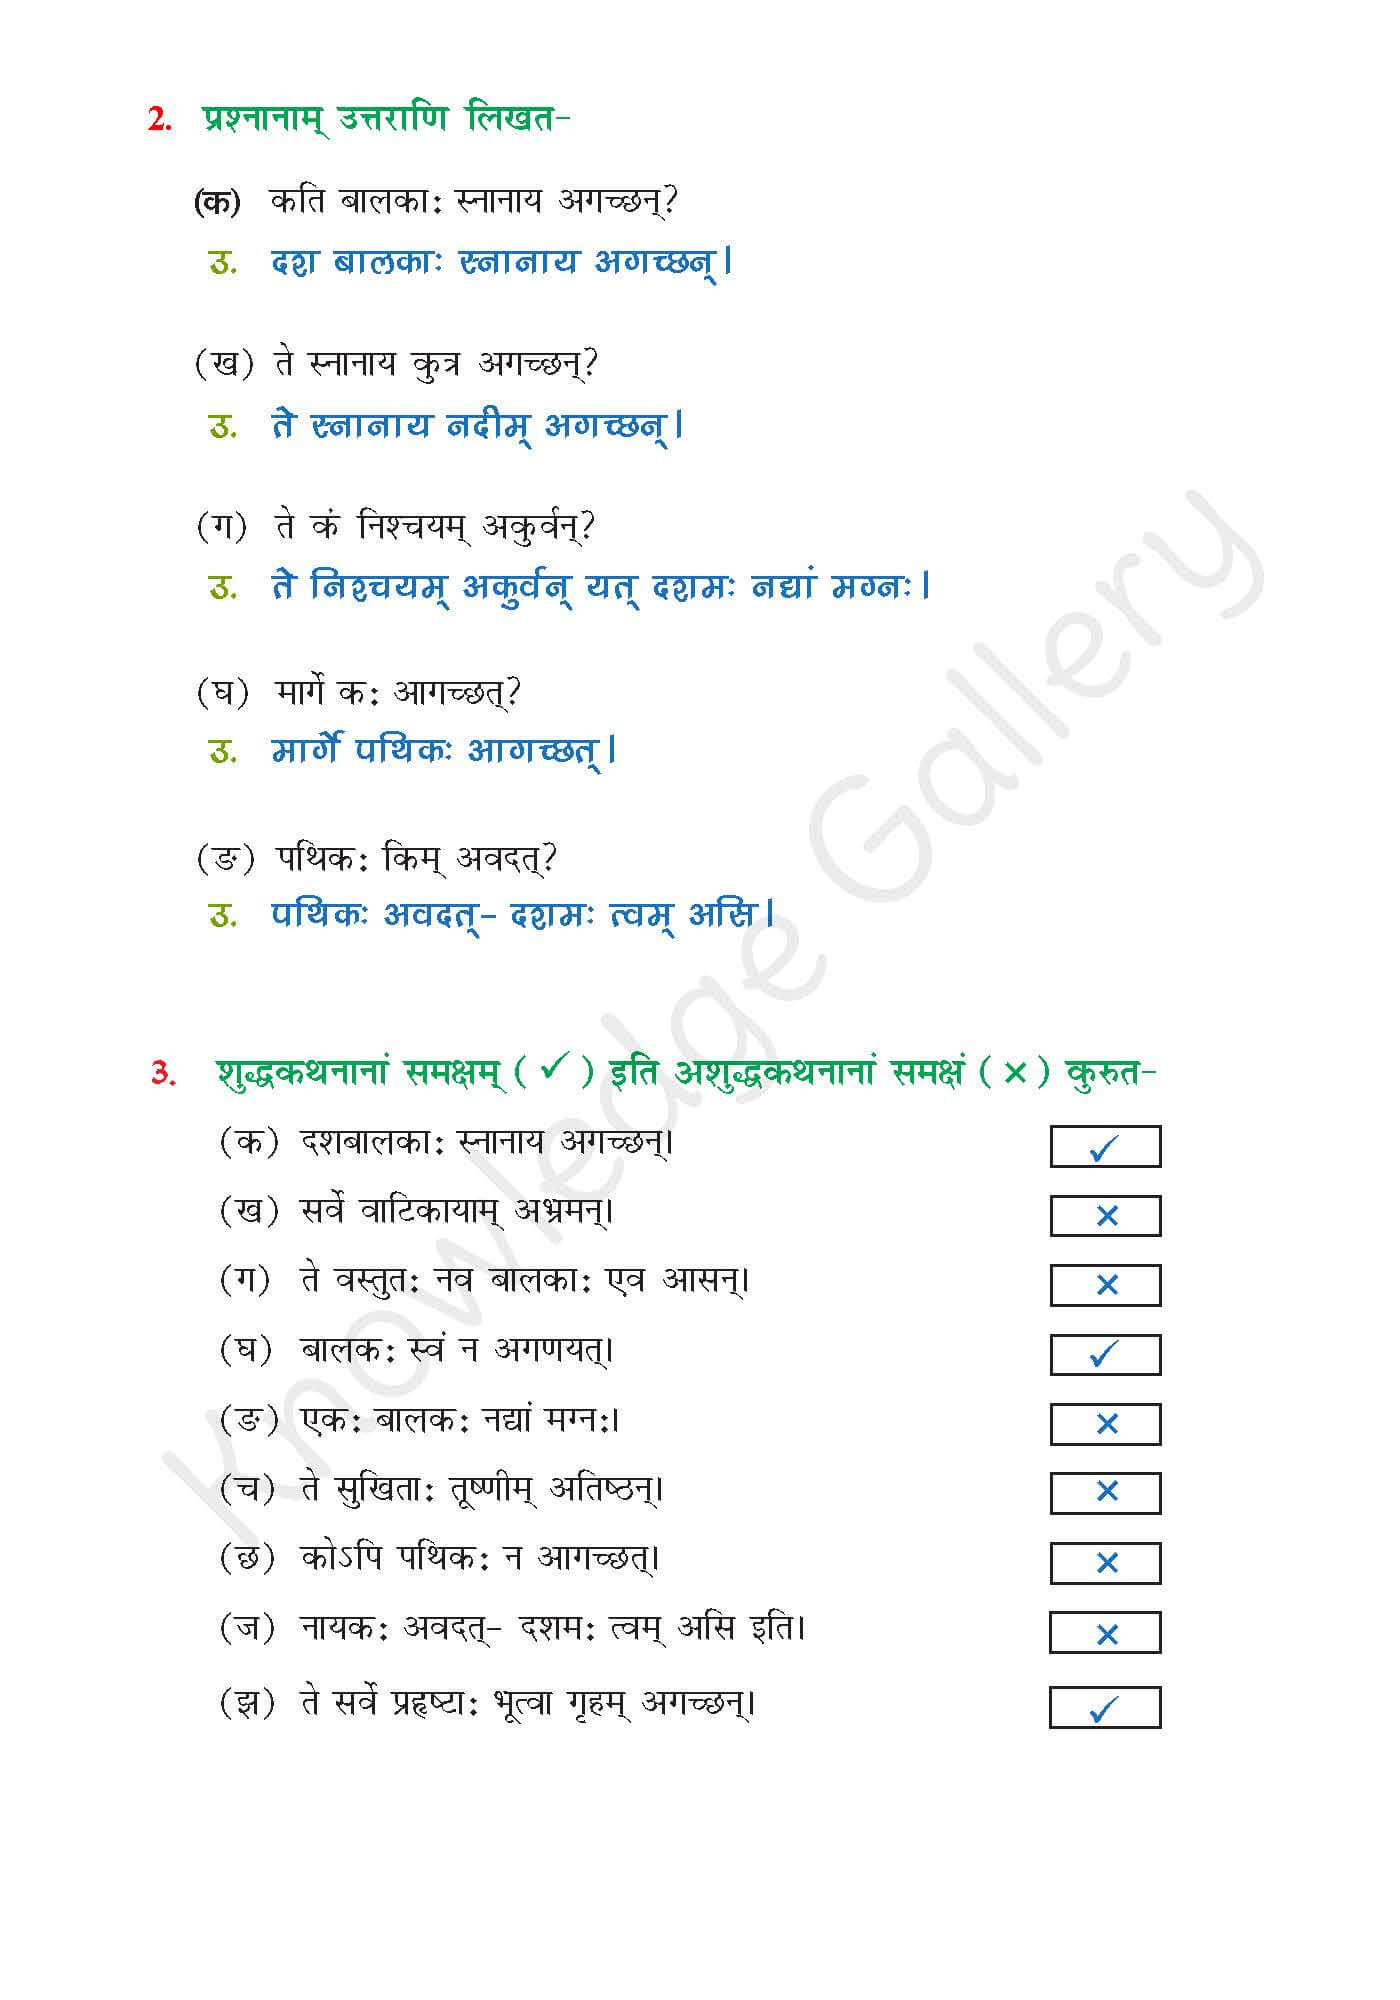 NCERT Solution For Class 6 Sanskrit Chapter 11 part 4